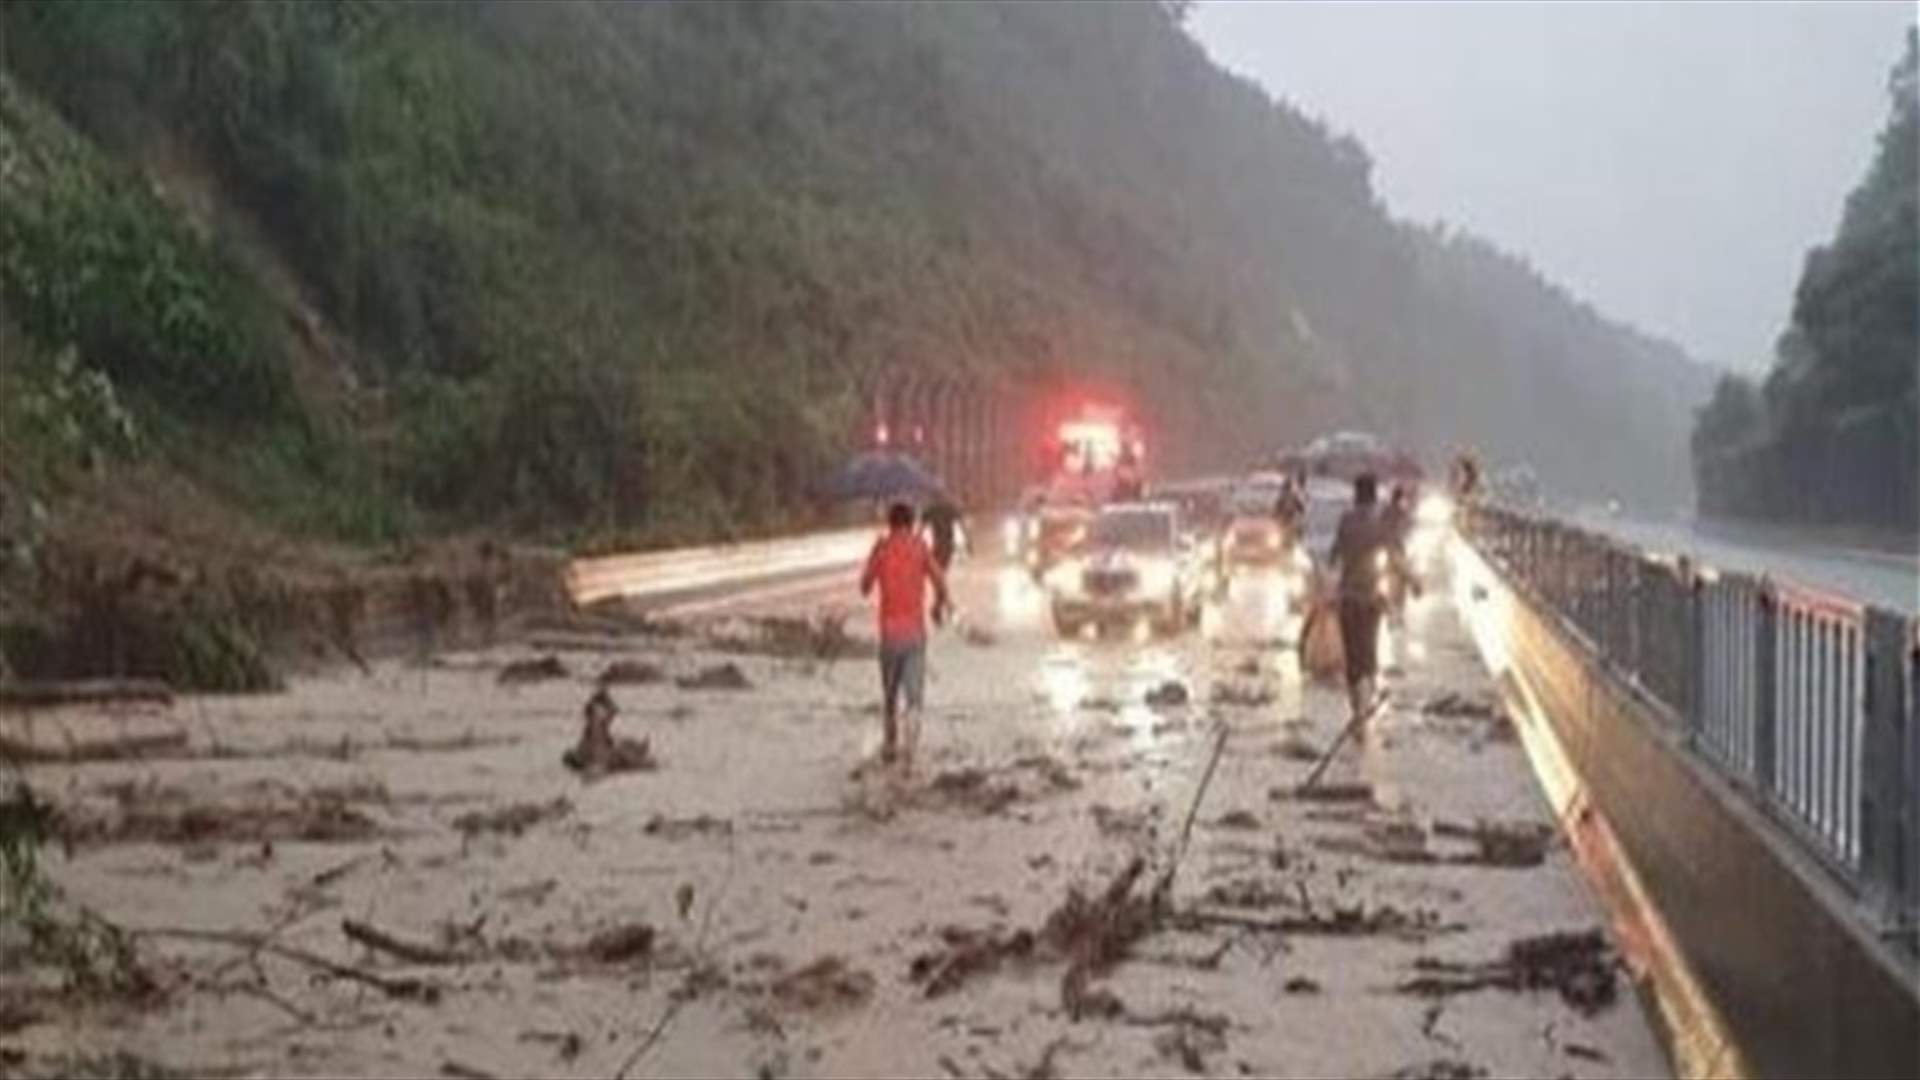 الأمطار الغزيرة في كوريا الجنوبية تخلف 13 قتيلا وأكثر من ألف نازح